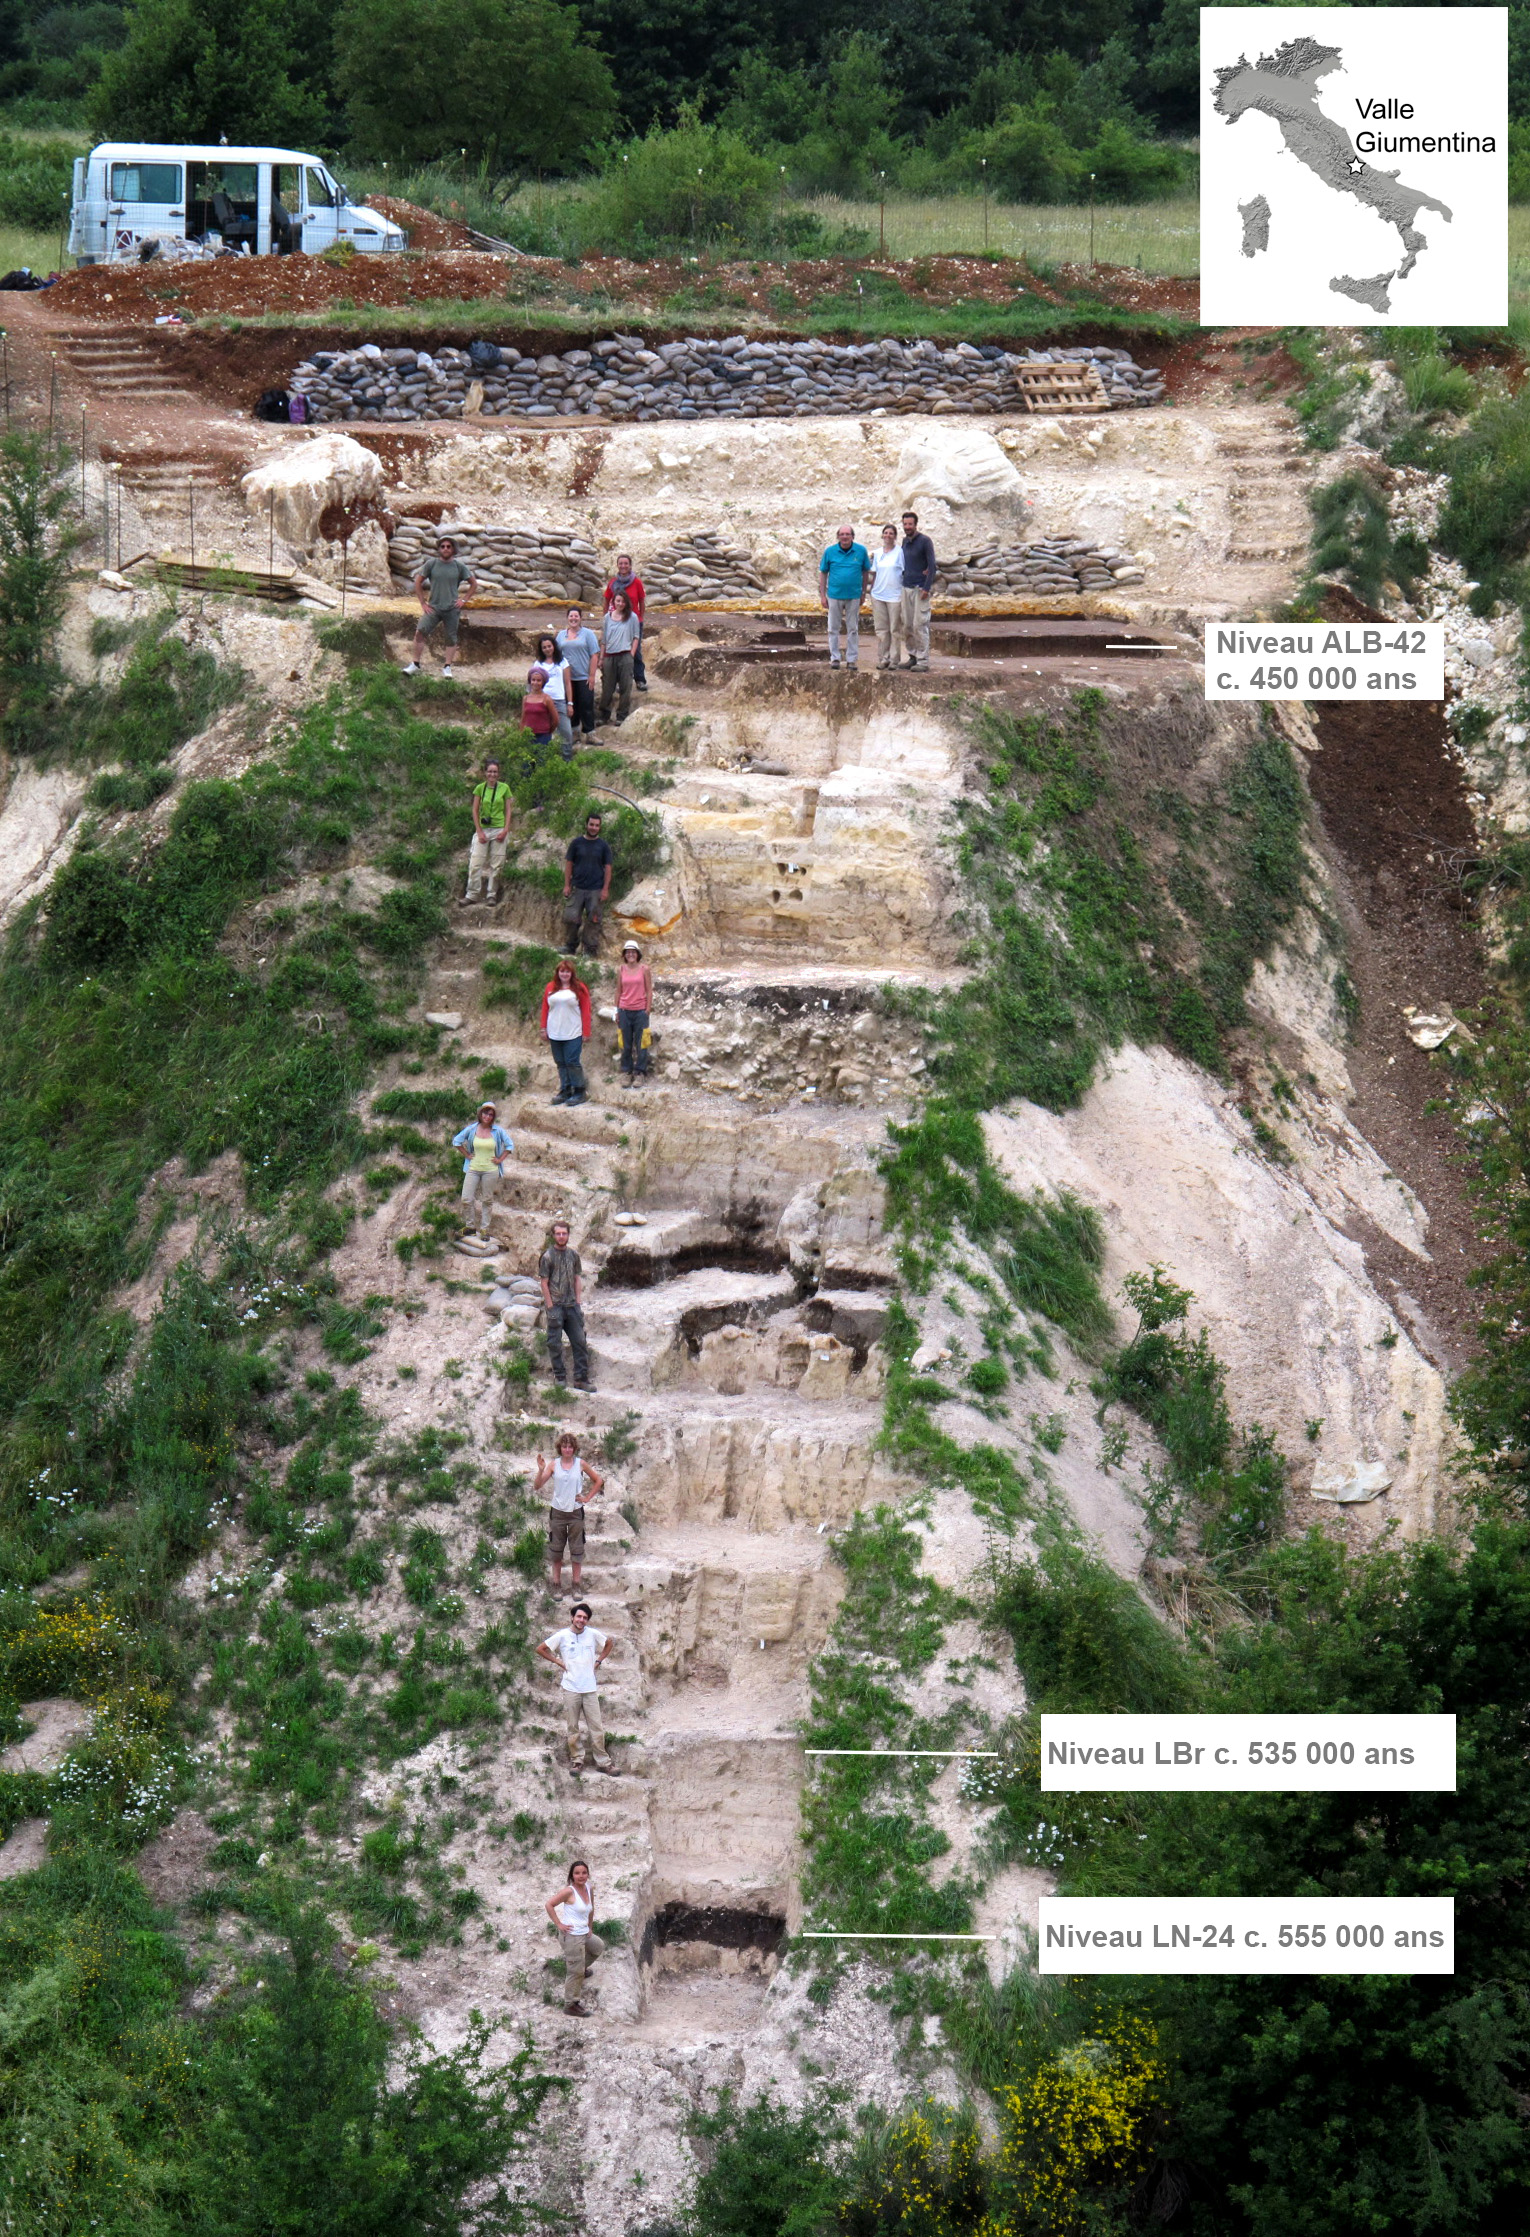 Localisation, coupe stratigraphique de Valle Giumentina (Abruzzes, Italie) et localisation des niveaux archéologiques et de leur chronologie. Cliché E. Nicoud/EFR, 2014.